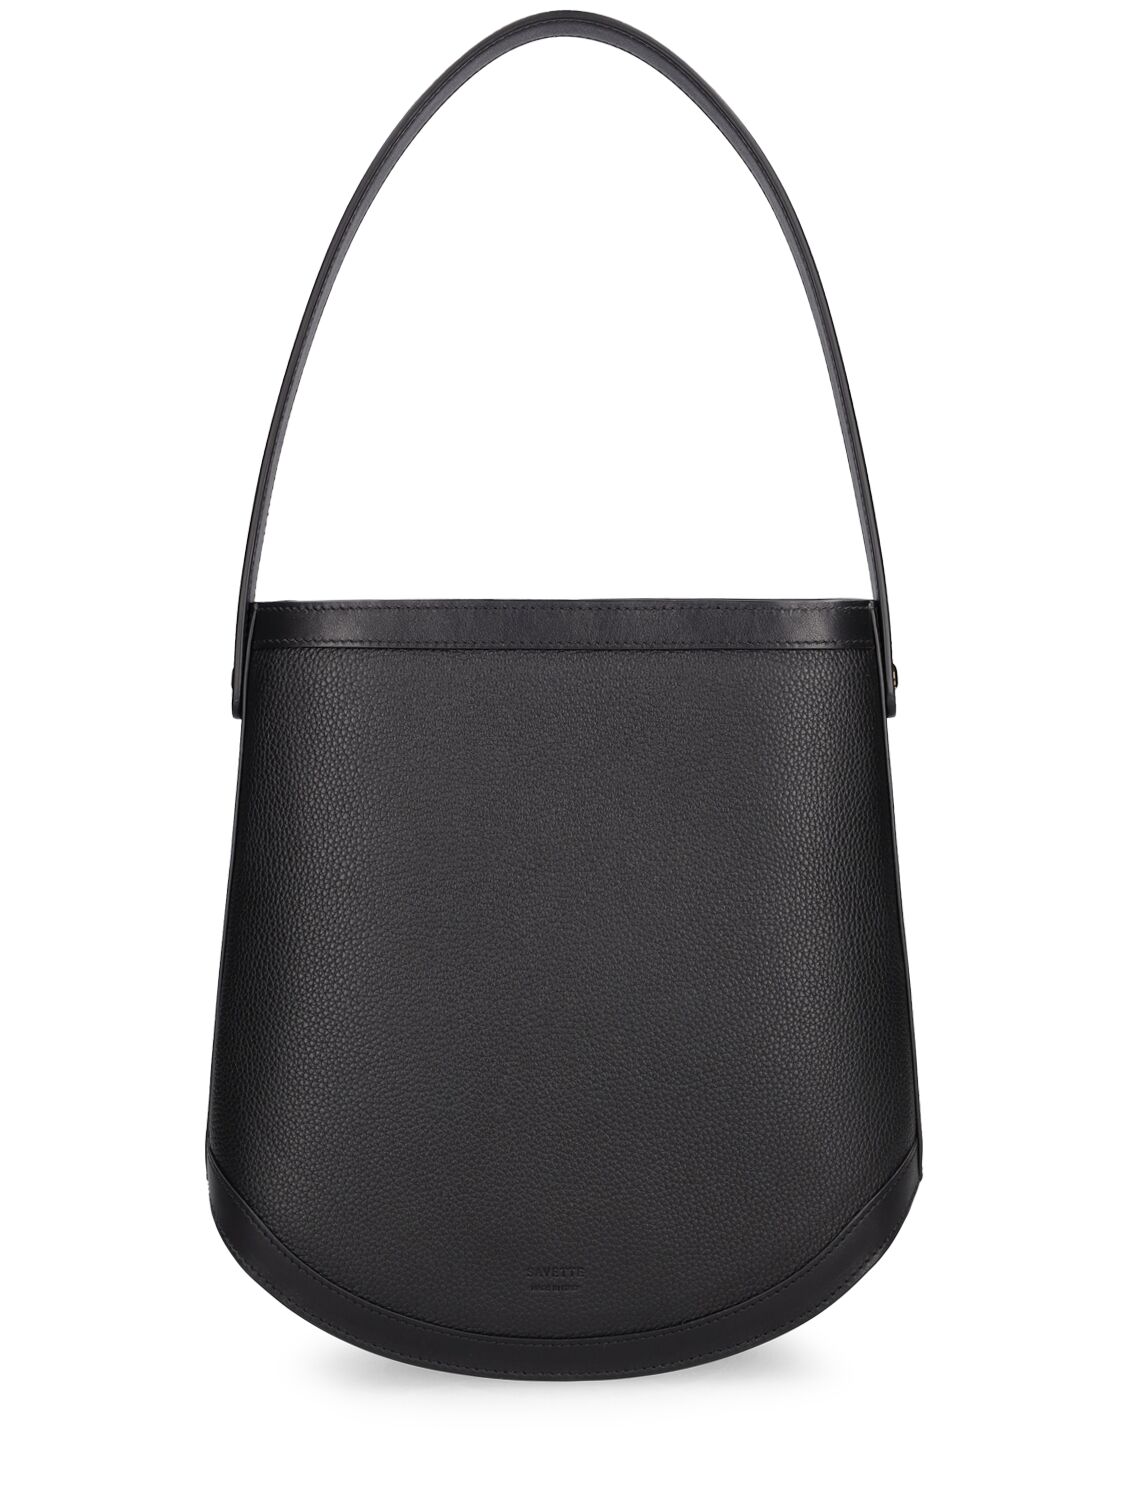 The Large Bucket Leather Shoulder Bag